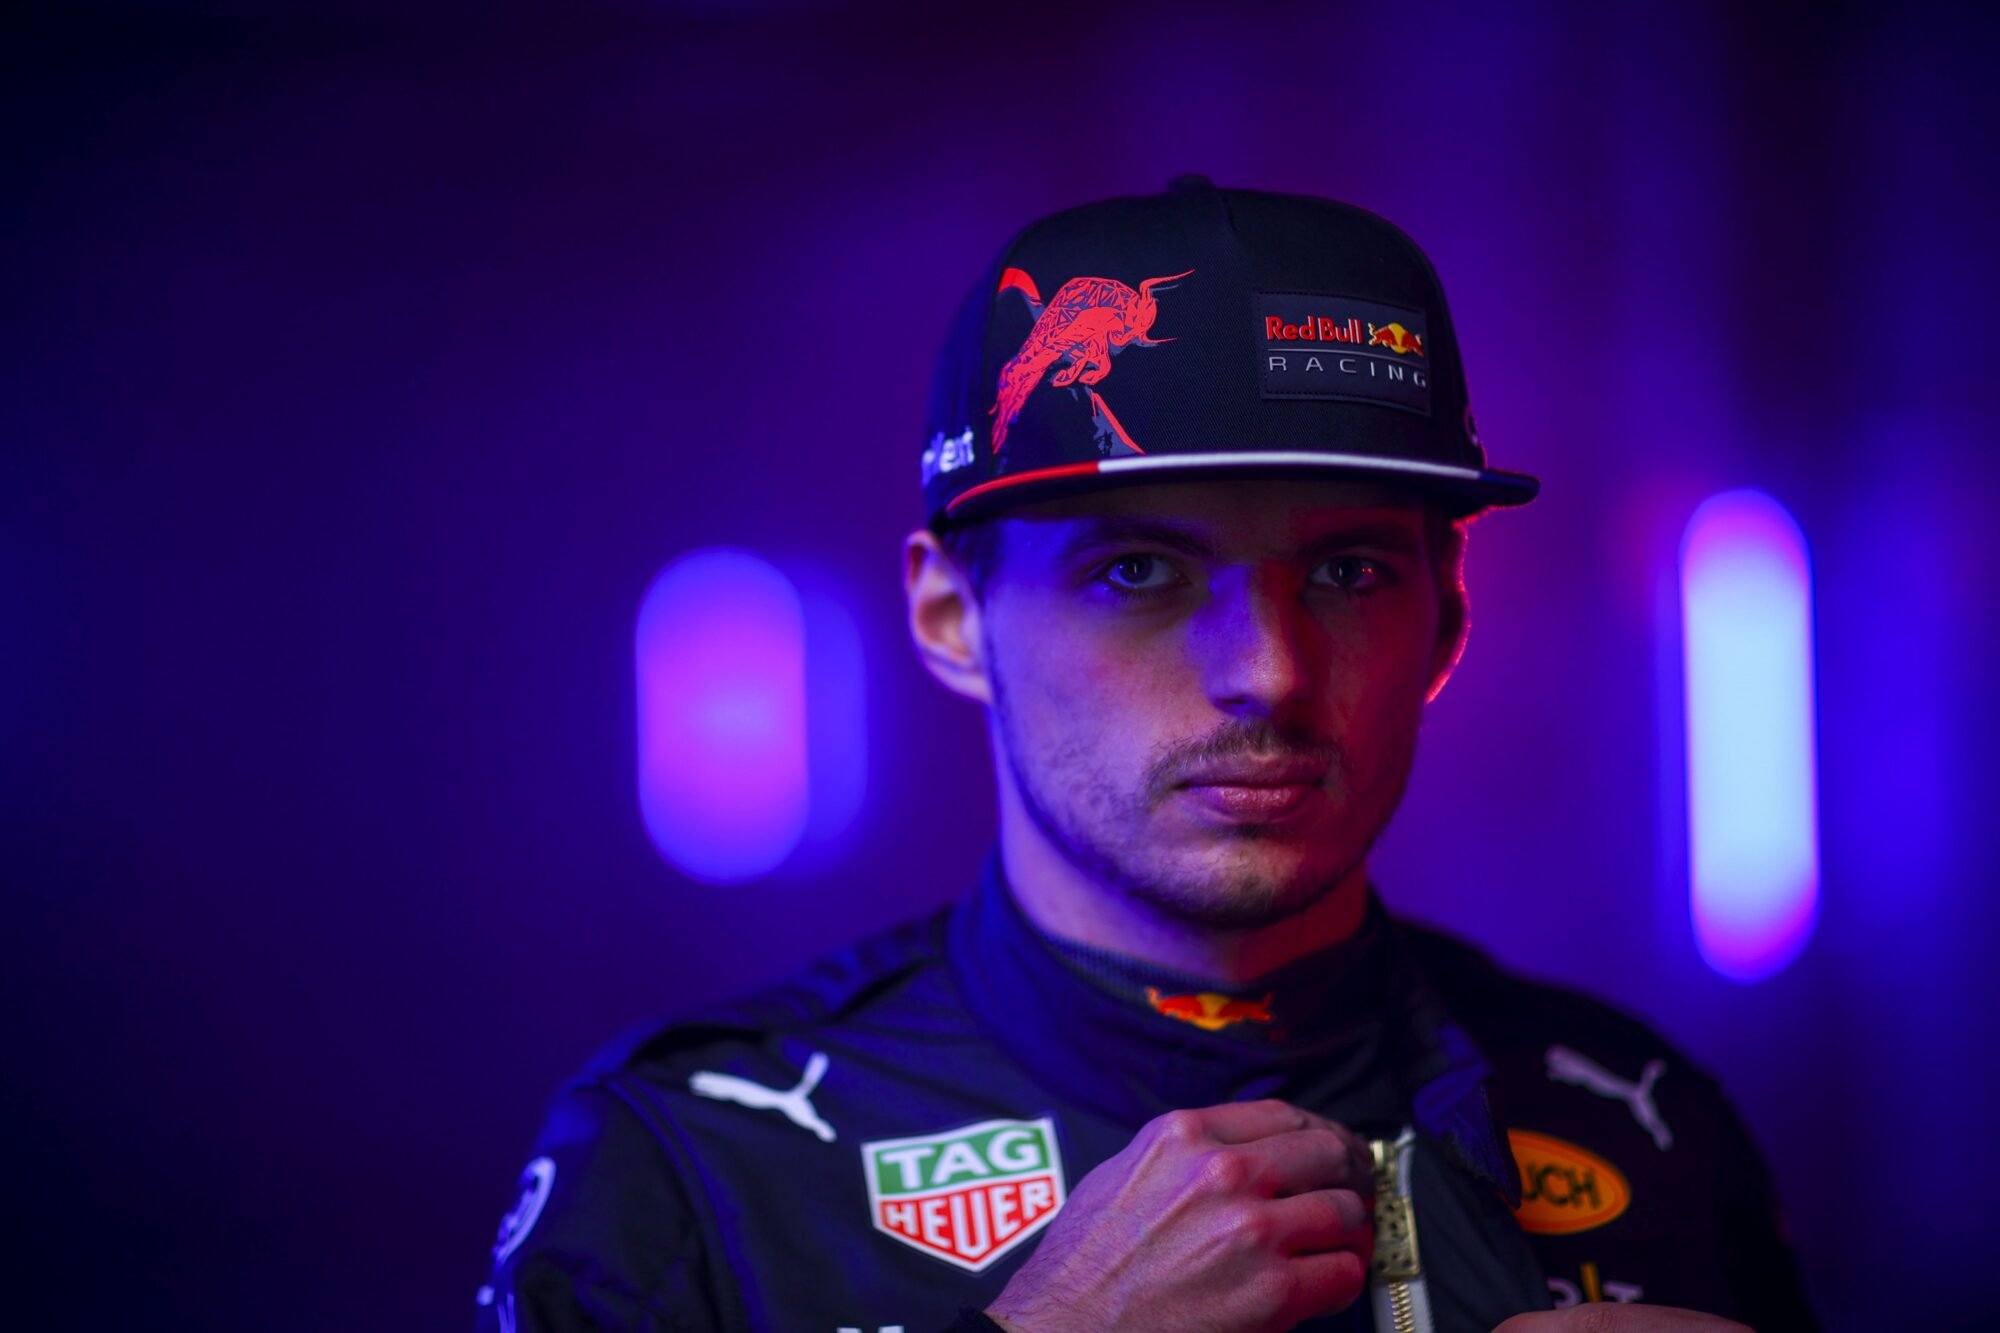  Max Verstappen s-a impus în Marele Premiu al Italiei, la Monza, învingându-l pe Charles Leclerc